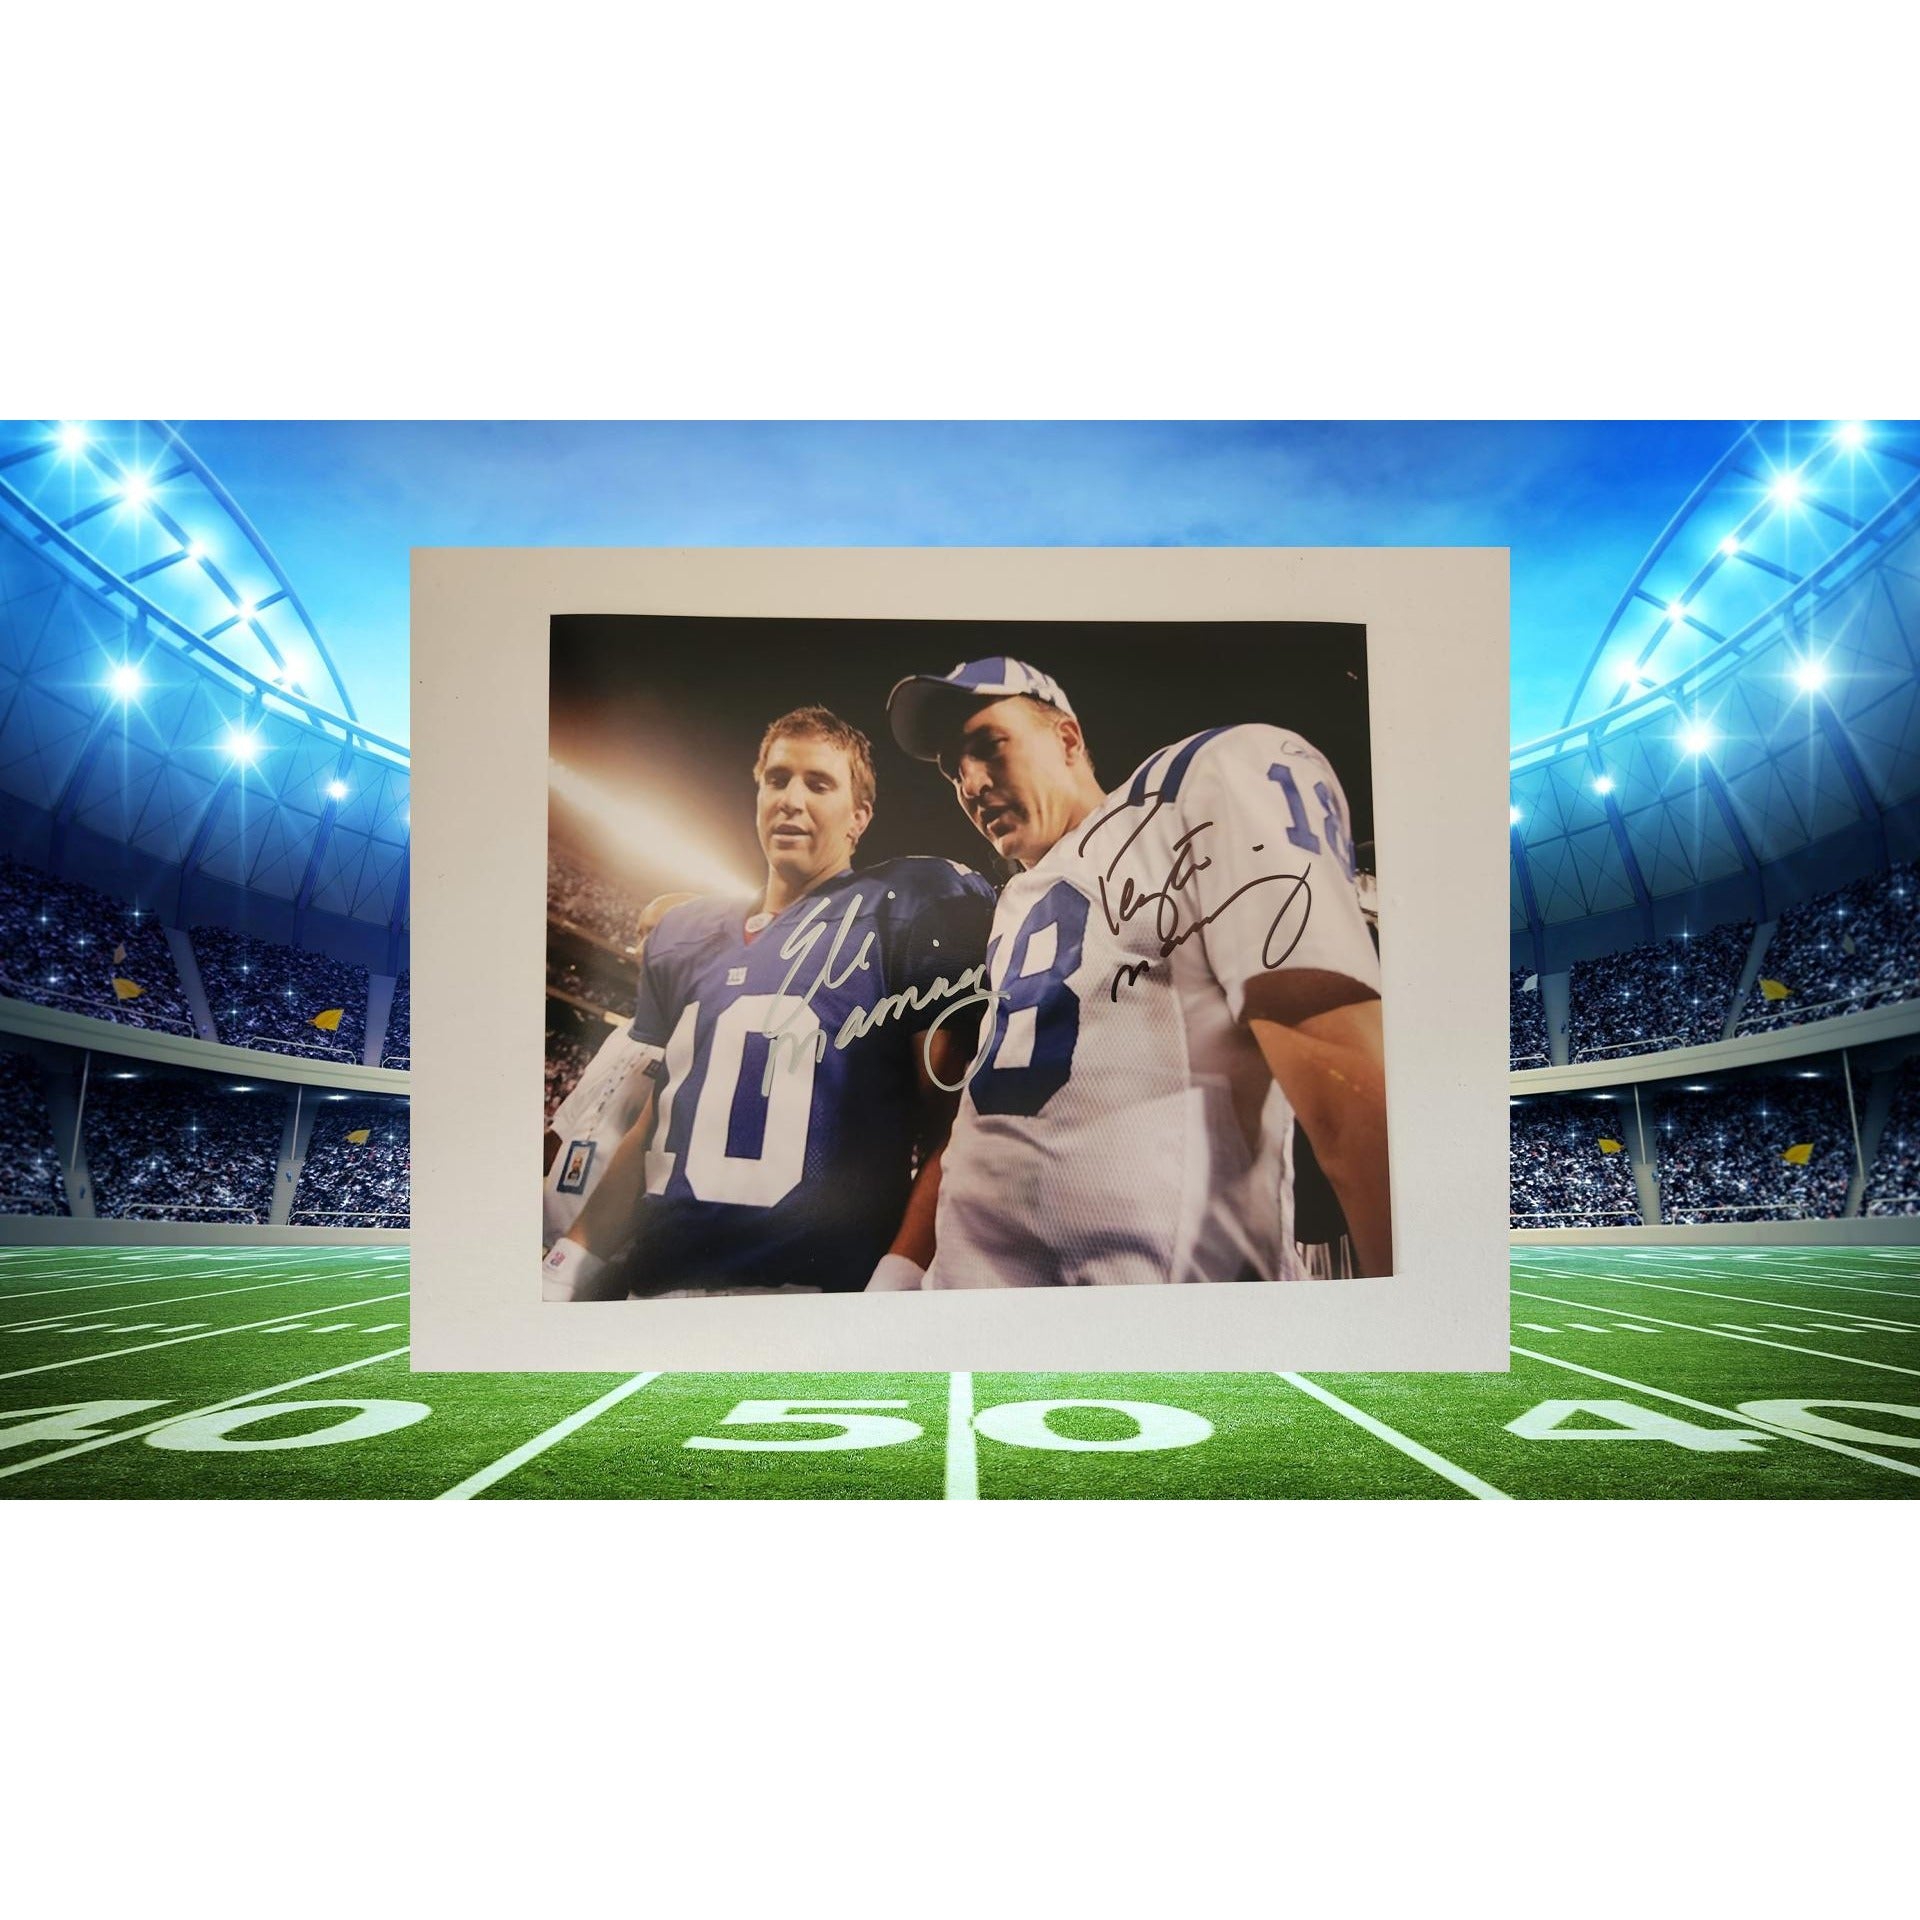 Eli and Peyton Manning 8x10 photo signed